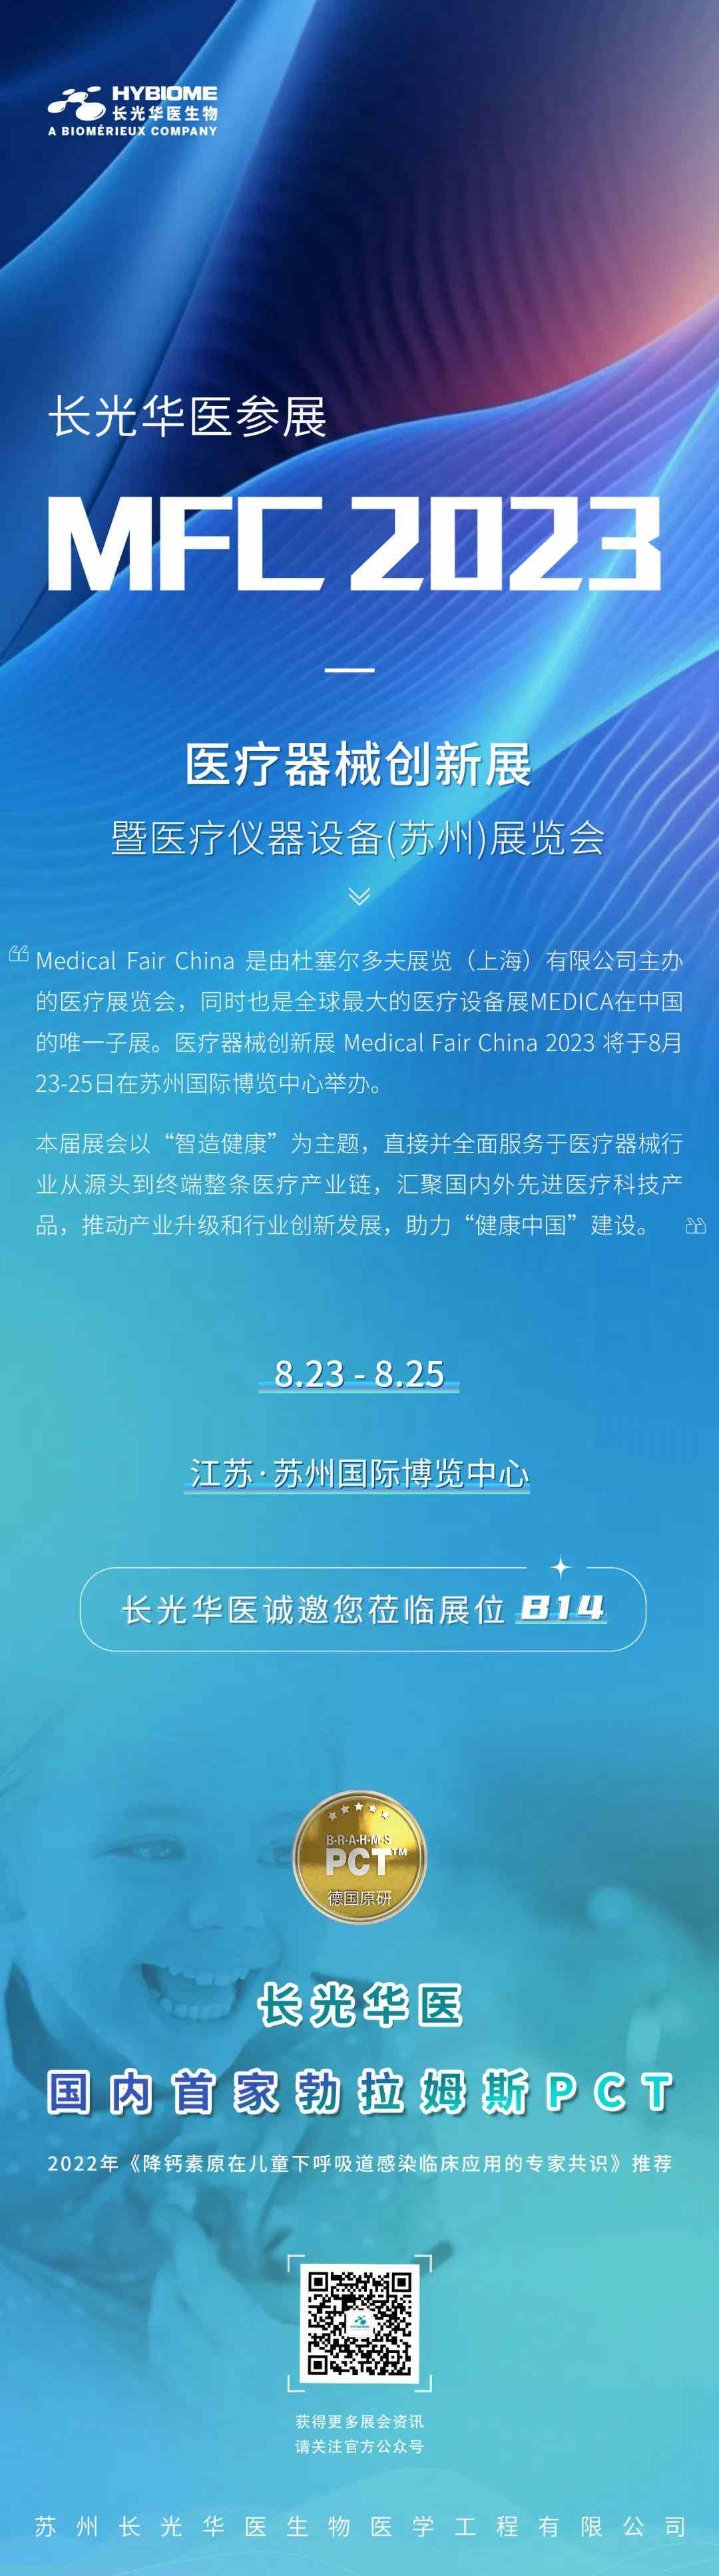 长光华医参展“MFC 2023-医疗器械创新展暨医疗仪器设备（苏州）展览会”